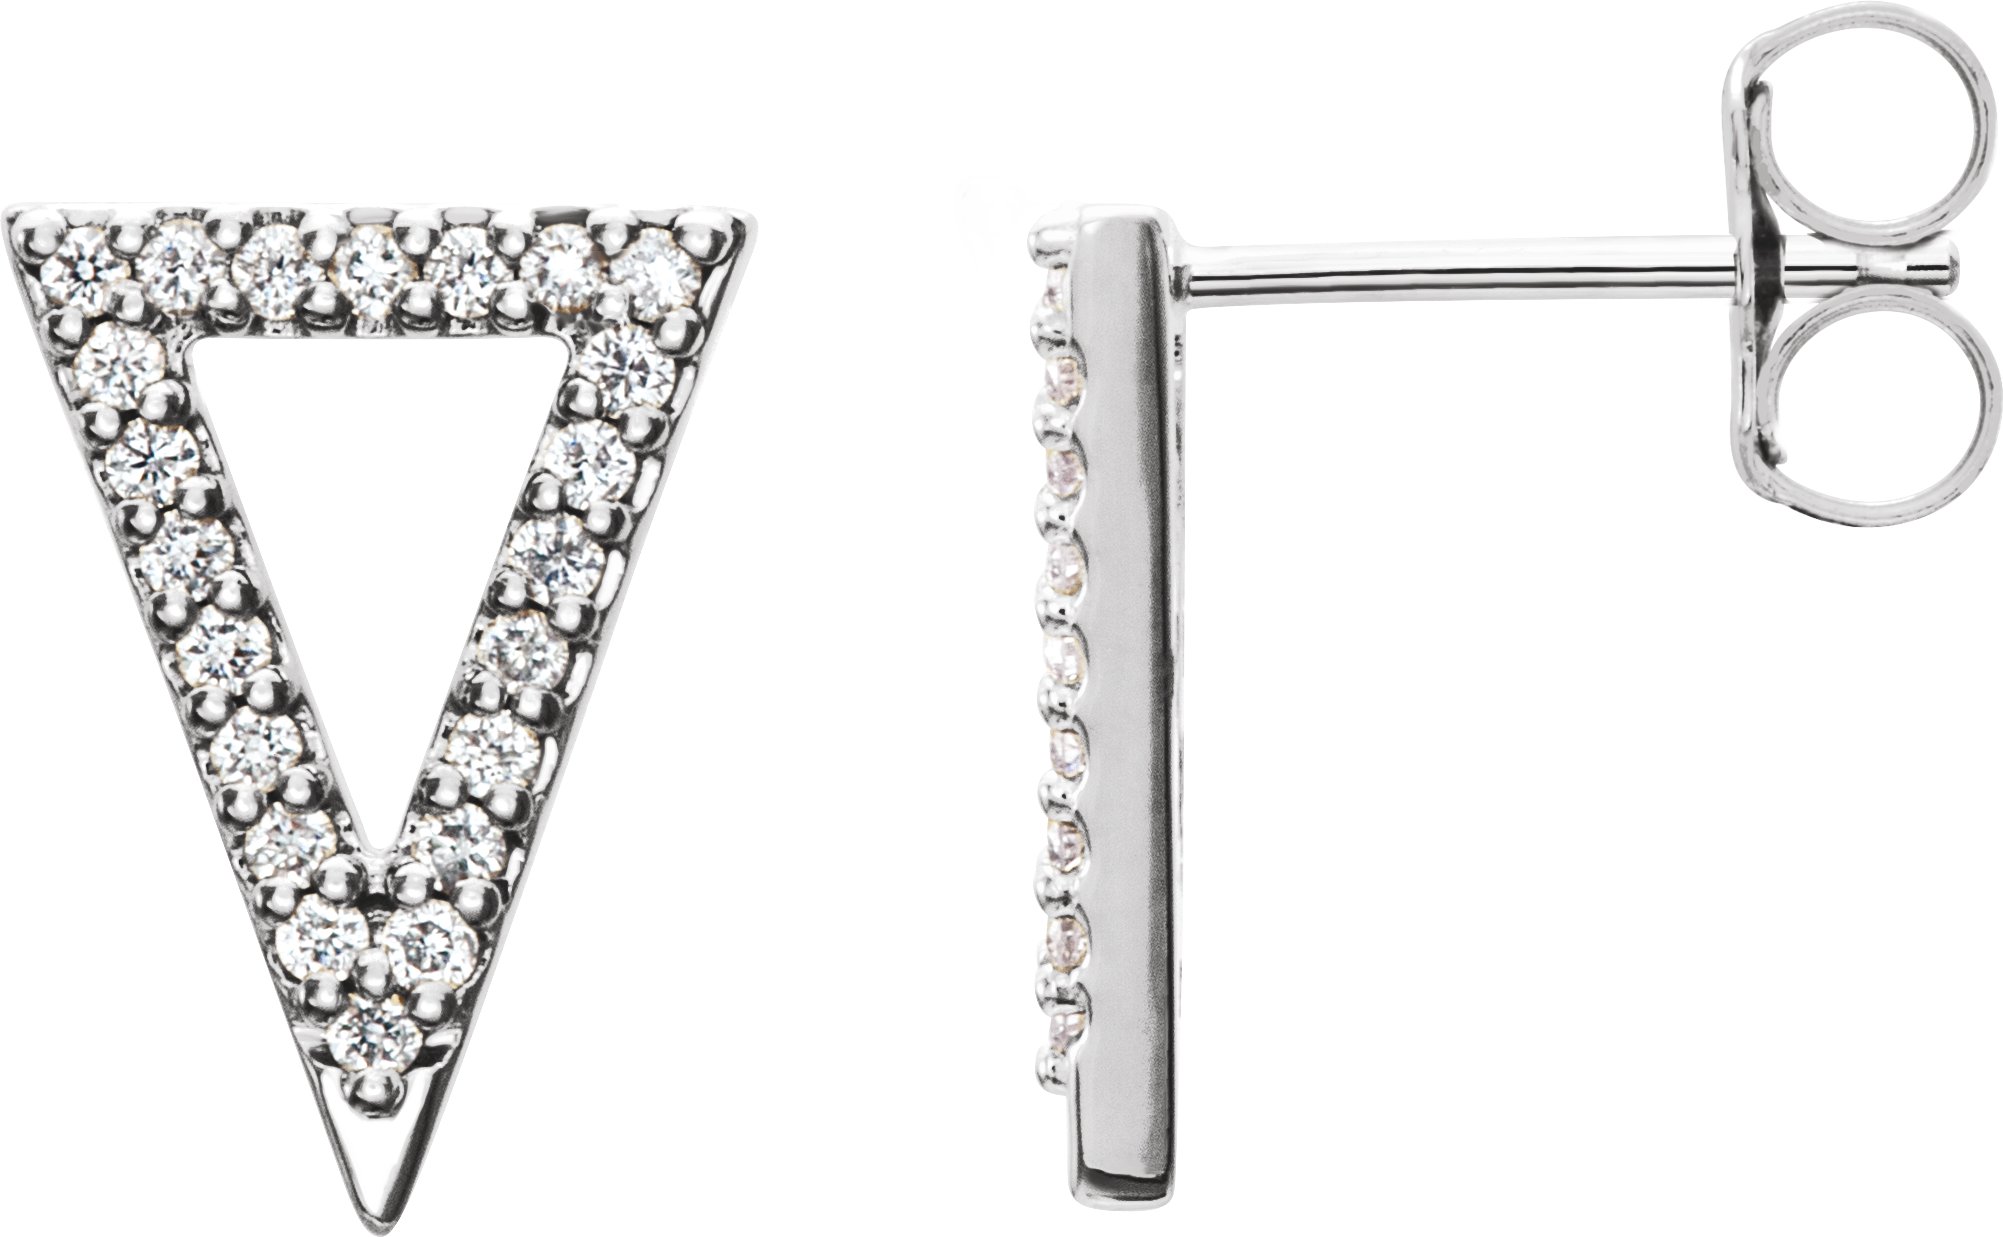 Sterling Silver 1/4 CTW Diamond Triangle Earrings